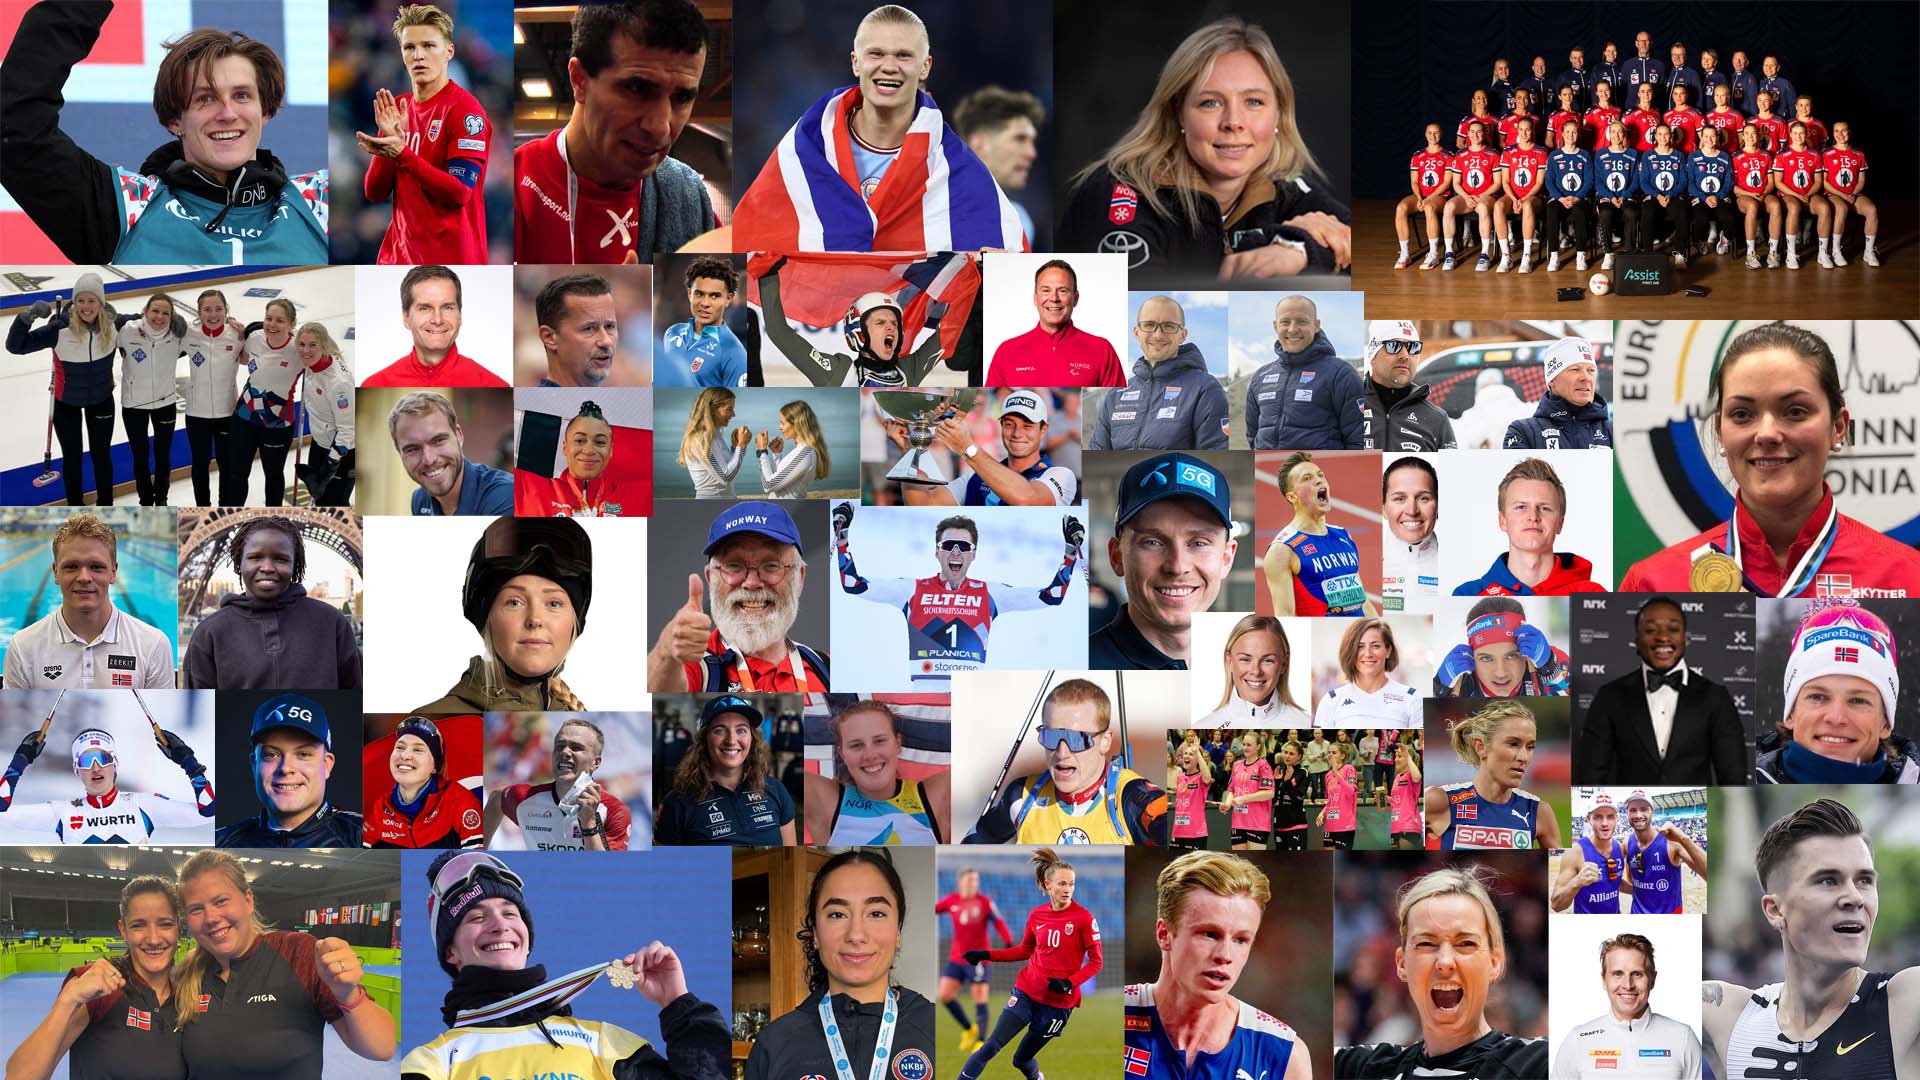 Mange spennende ansikter blant de nominerte til Idrettsgalla 2024. Årets største idrettsshow finner sted i Trondheim lørdag 6. januar. Se showet direkte på NRK. 